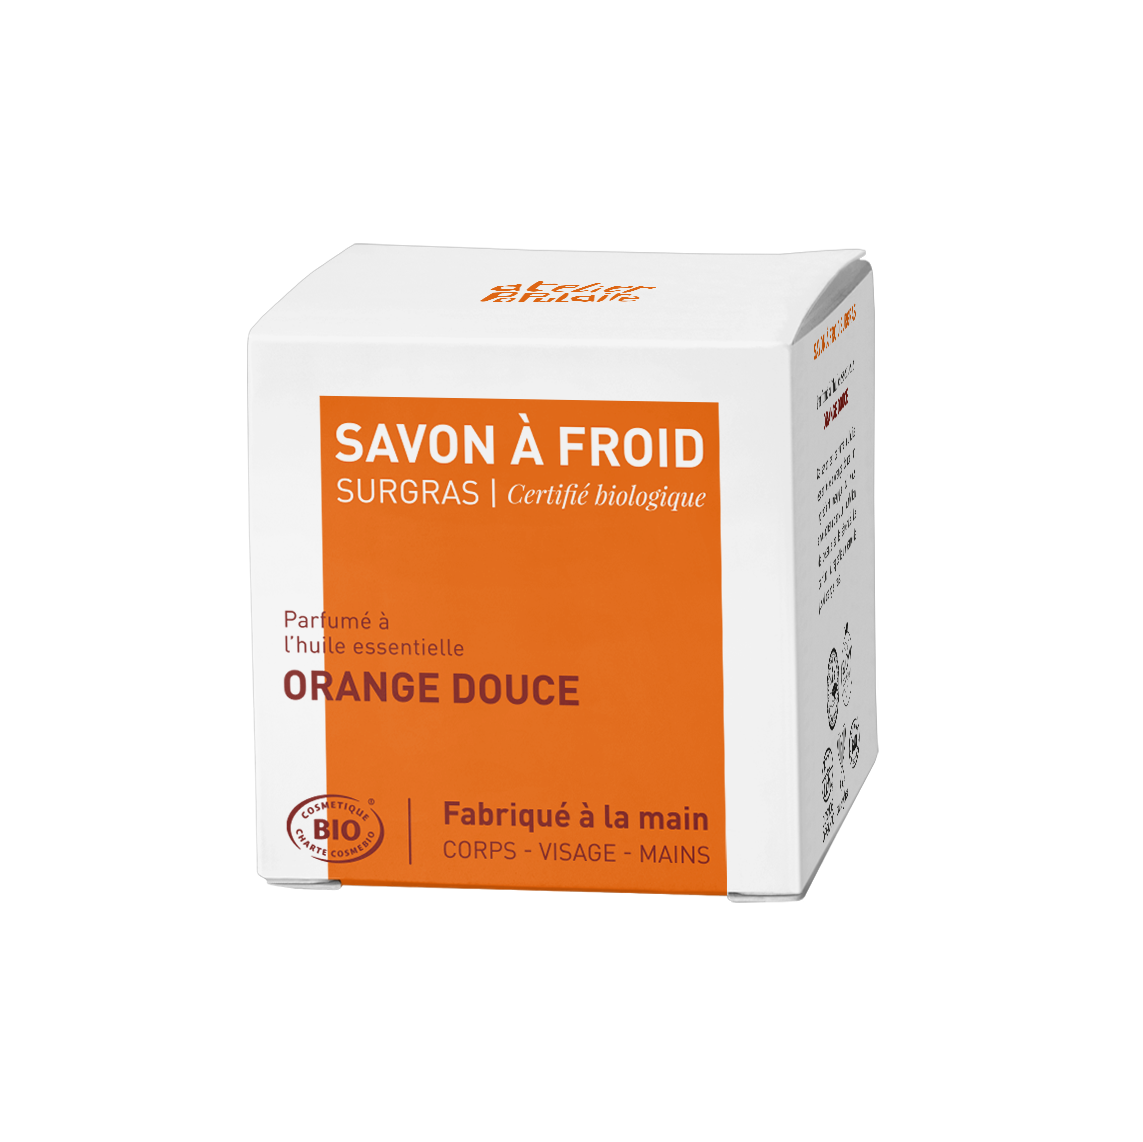 Savon saponifié à froid certifié bio artisanal - Orange douce par Atelier Populaire - 90g